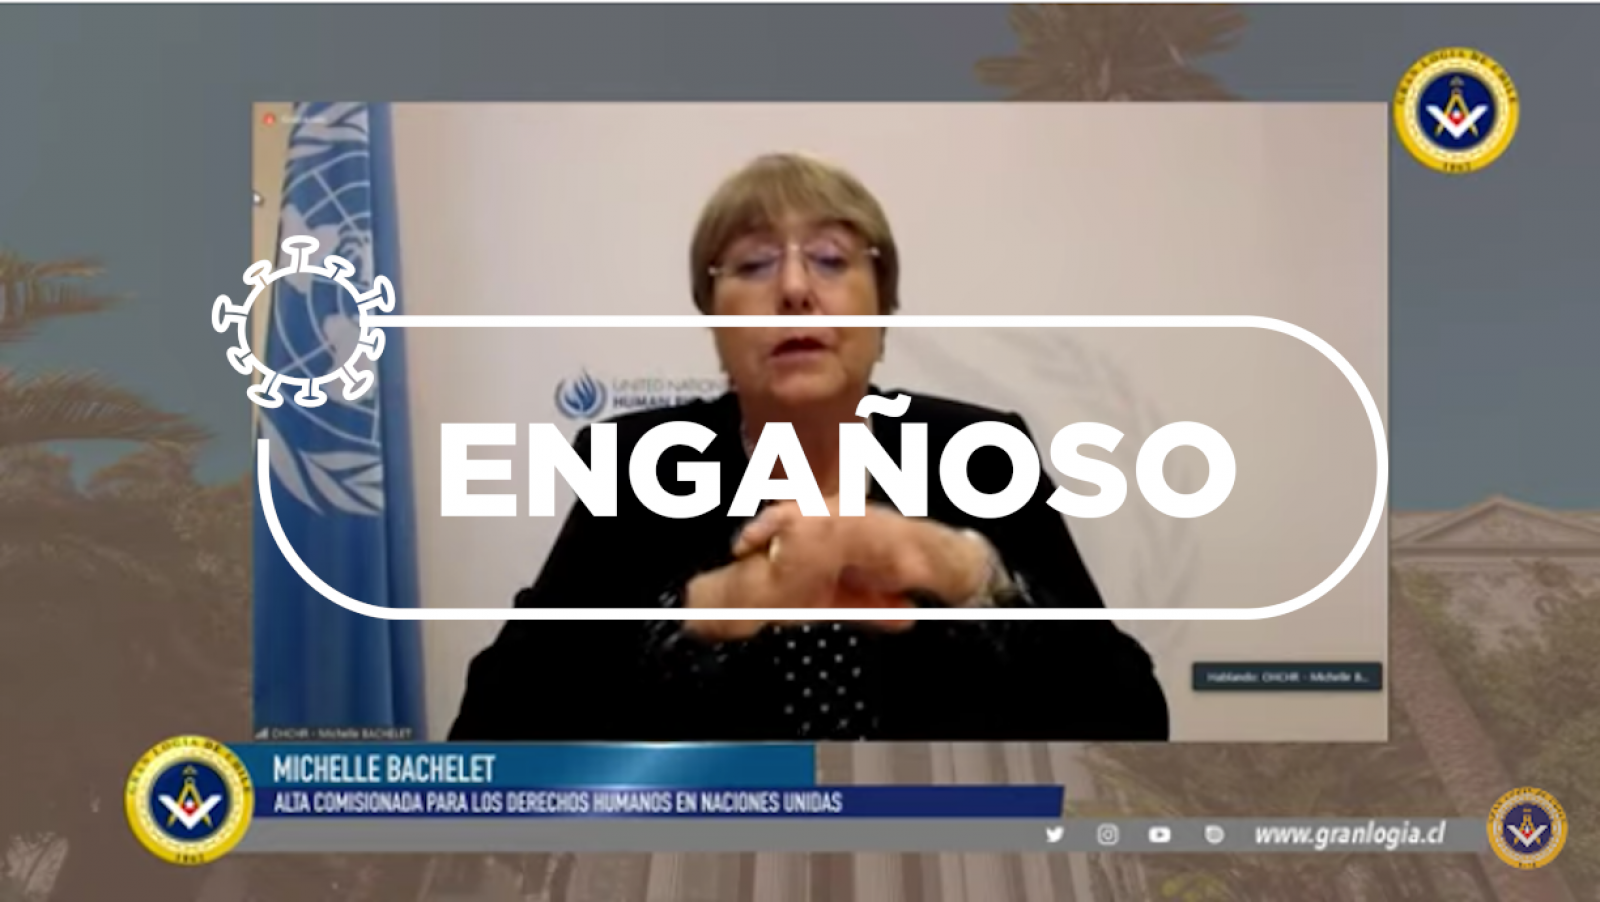 Michelle Bachelet, durante su intervención en el acto telemático por el aniversario de la Declaración Universal de los Derechos Humanos con el sello de "Engañoso".